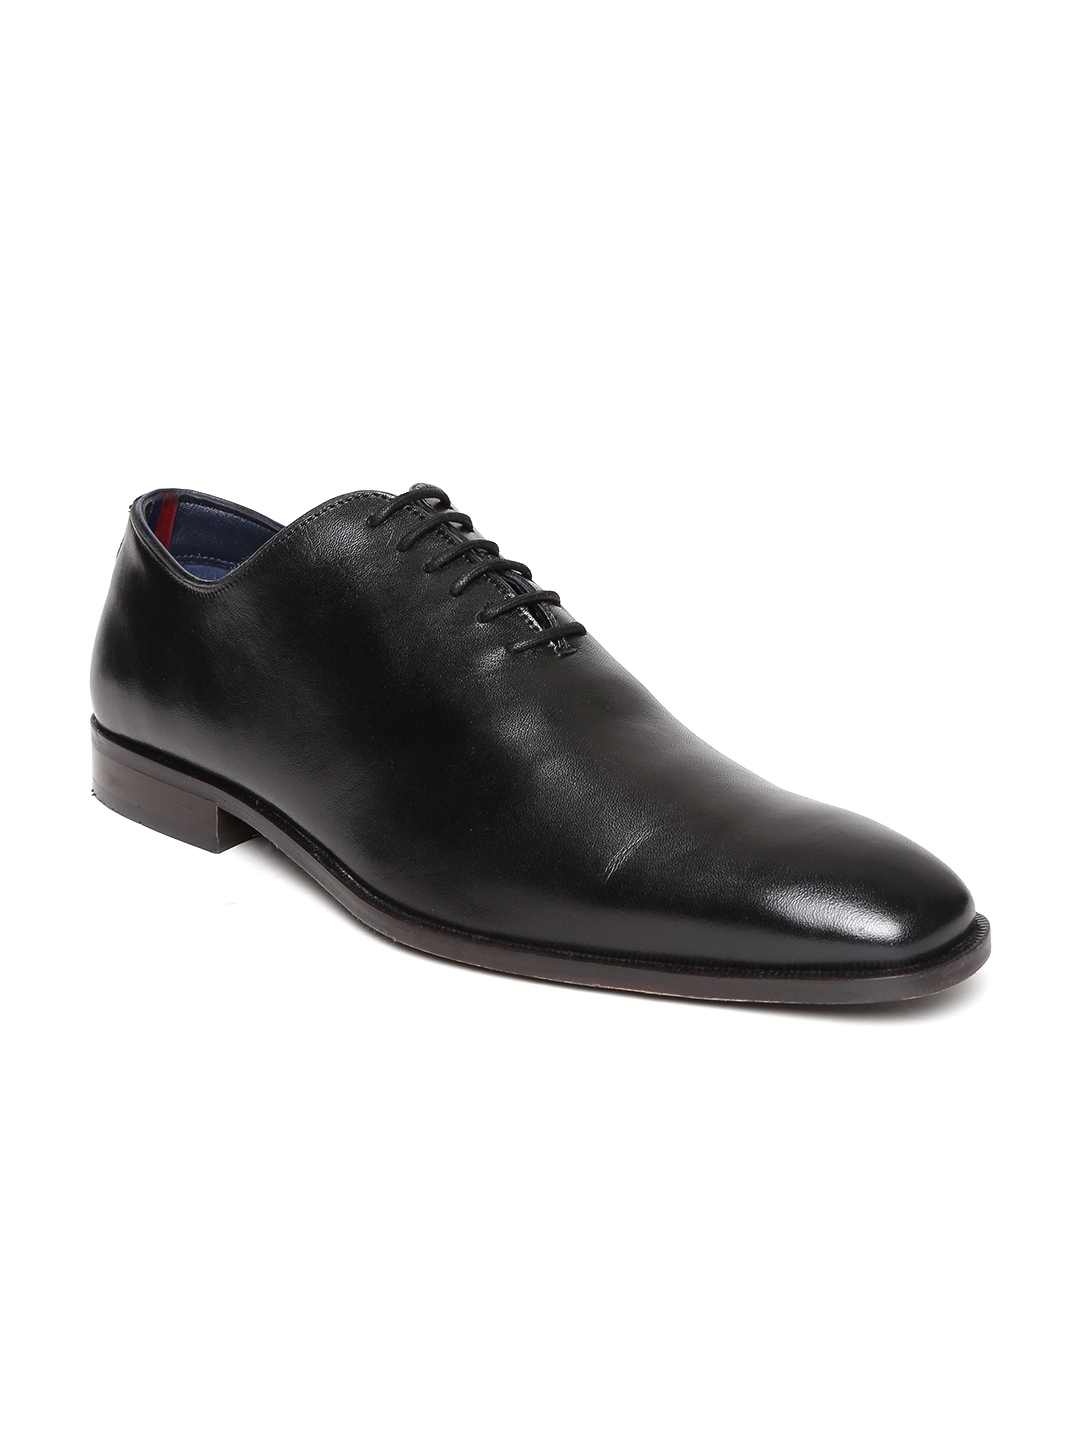 bata formal black shoes online